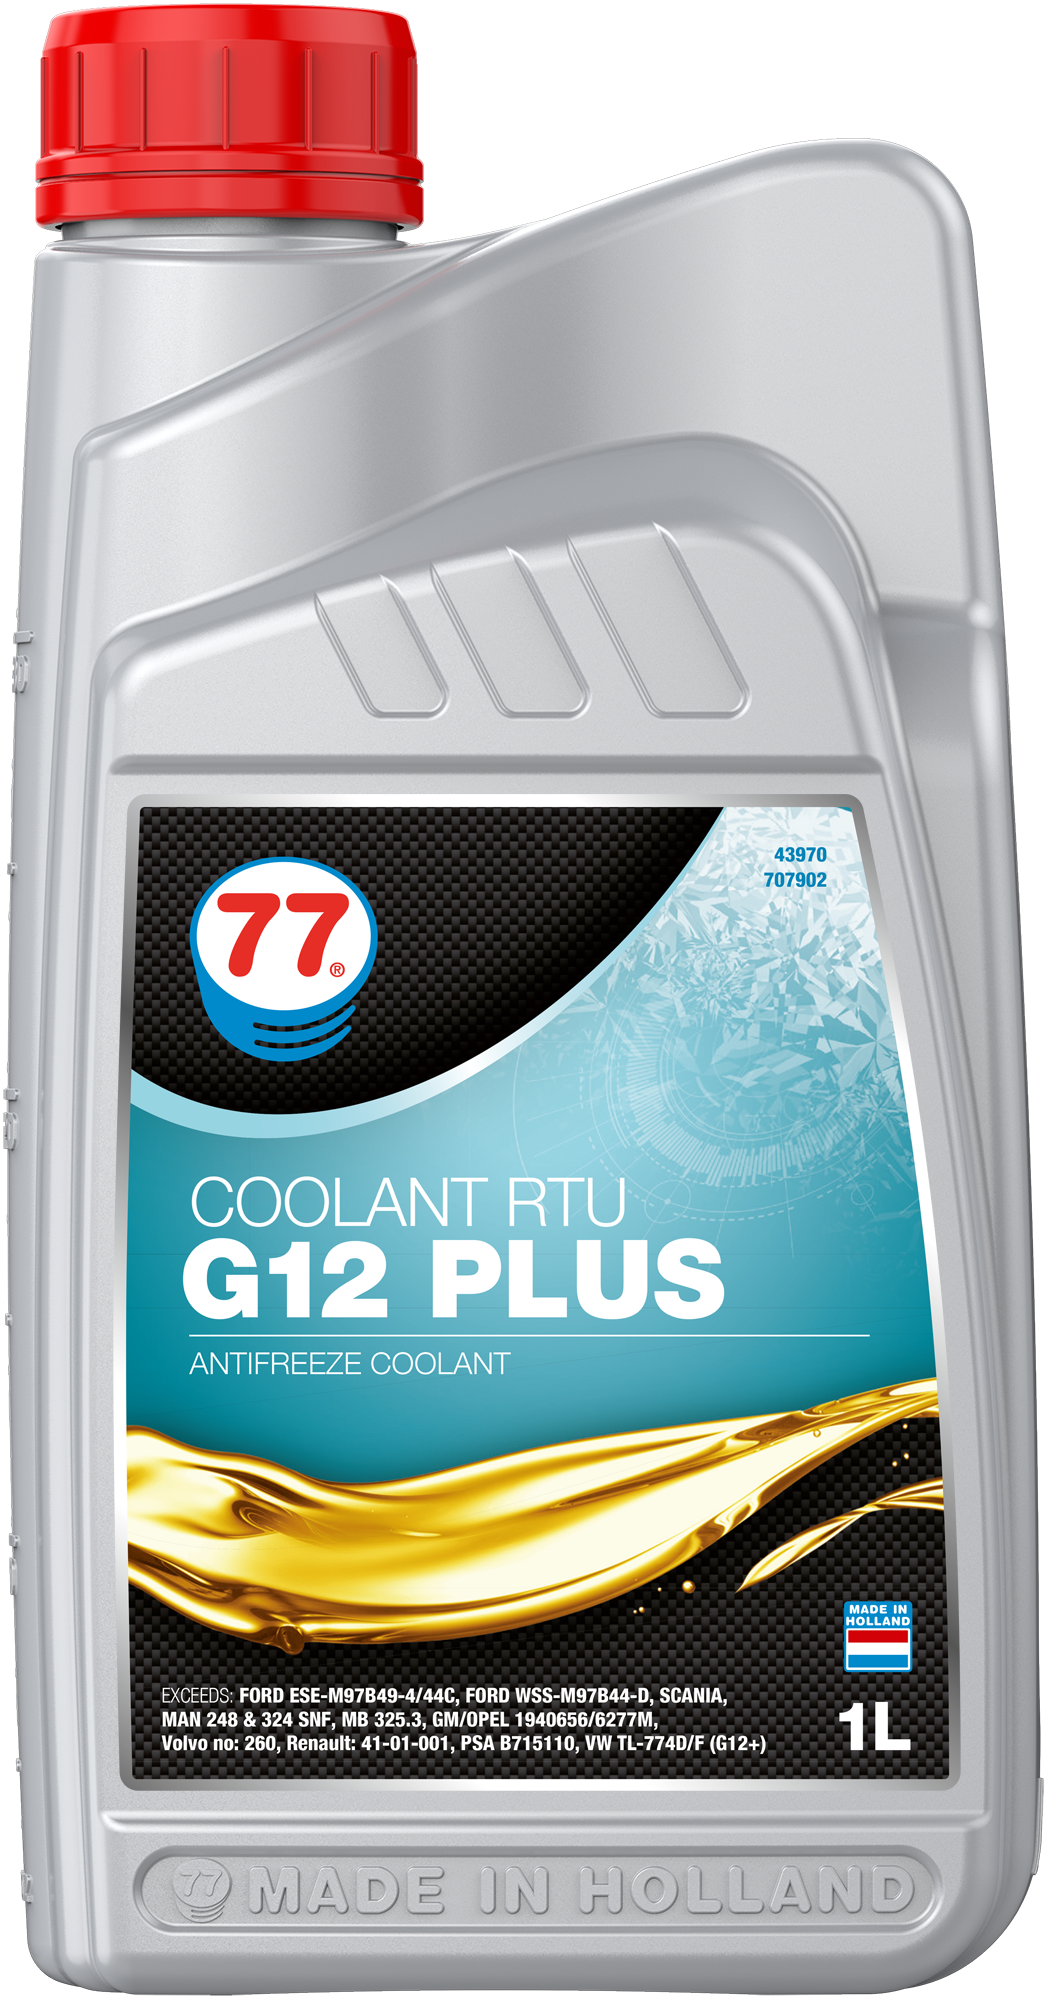 4397-1 Coolant RTU G 12 Plus van 77 lubricants is een Long-Life Ready-To-Use  lange levensduur silicaat-, amine-, nitriet-,borate-  en fosfatenvrije  koelvloeistof  om te worden gebruikt als koel- en warmteoverdrachtsvloeistof in verbrandingsmotoren.